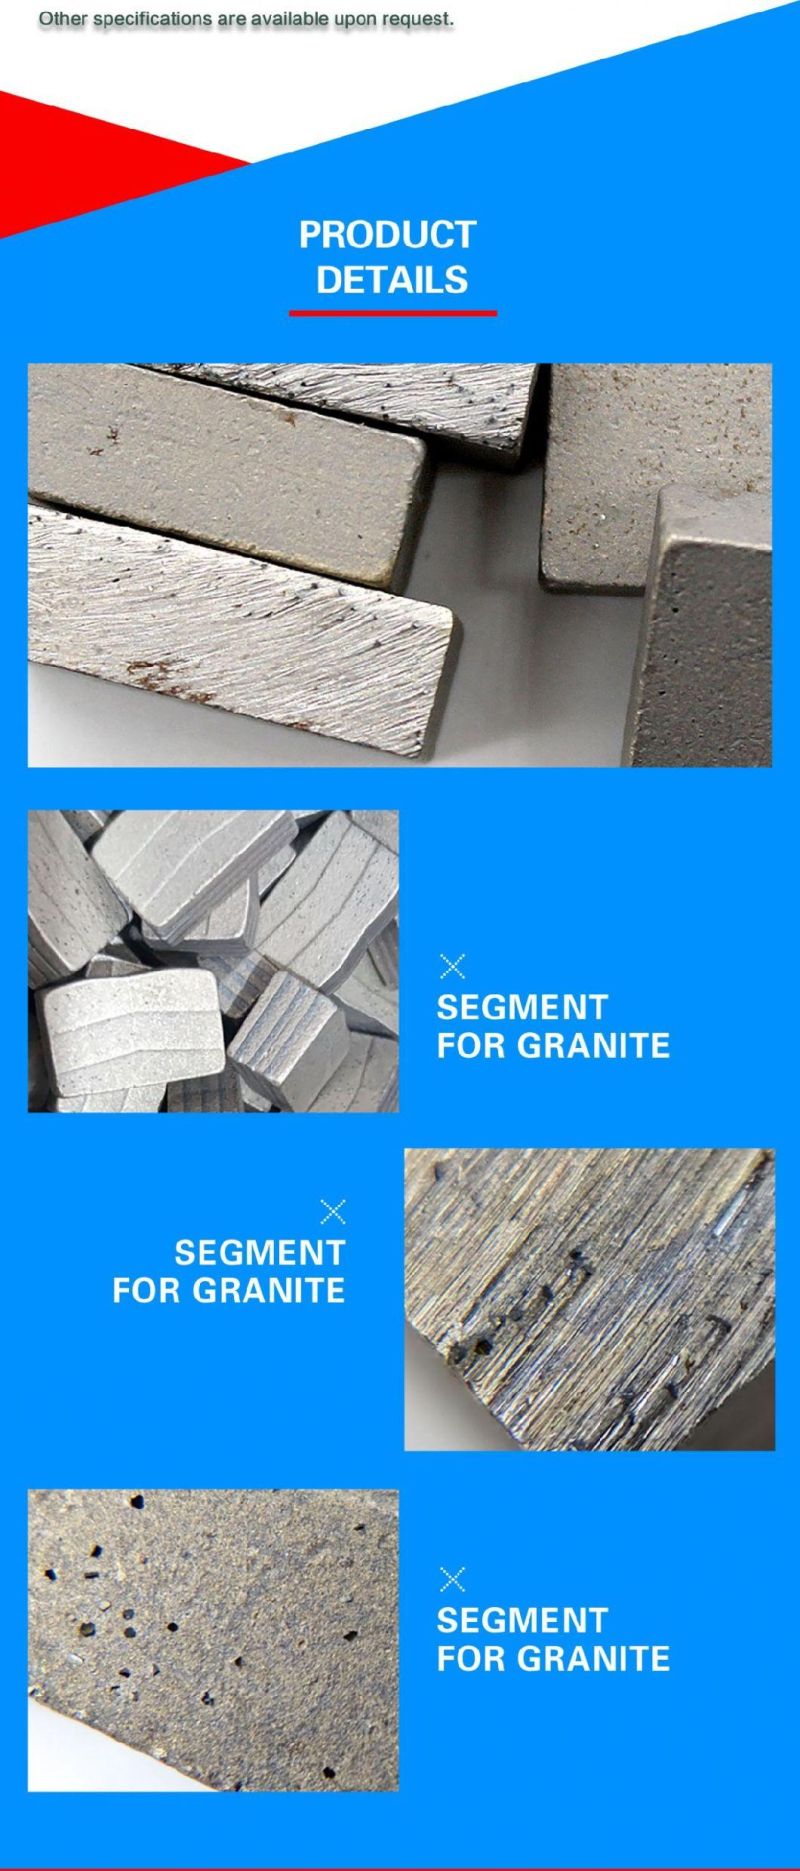 800mm Single Granite Blade for Cutting Gabbro Granite Hot Sale in Russia Diamond Segment